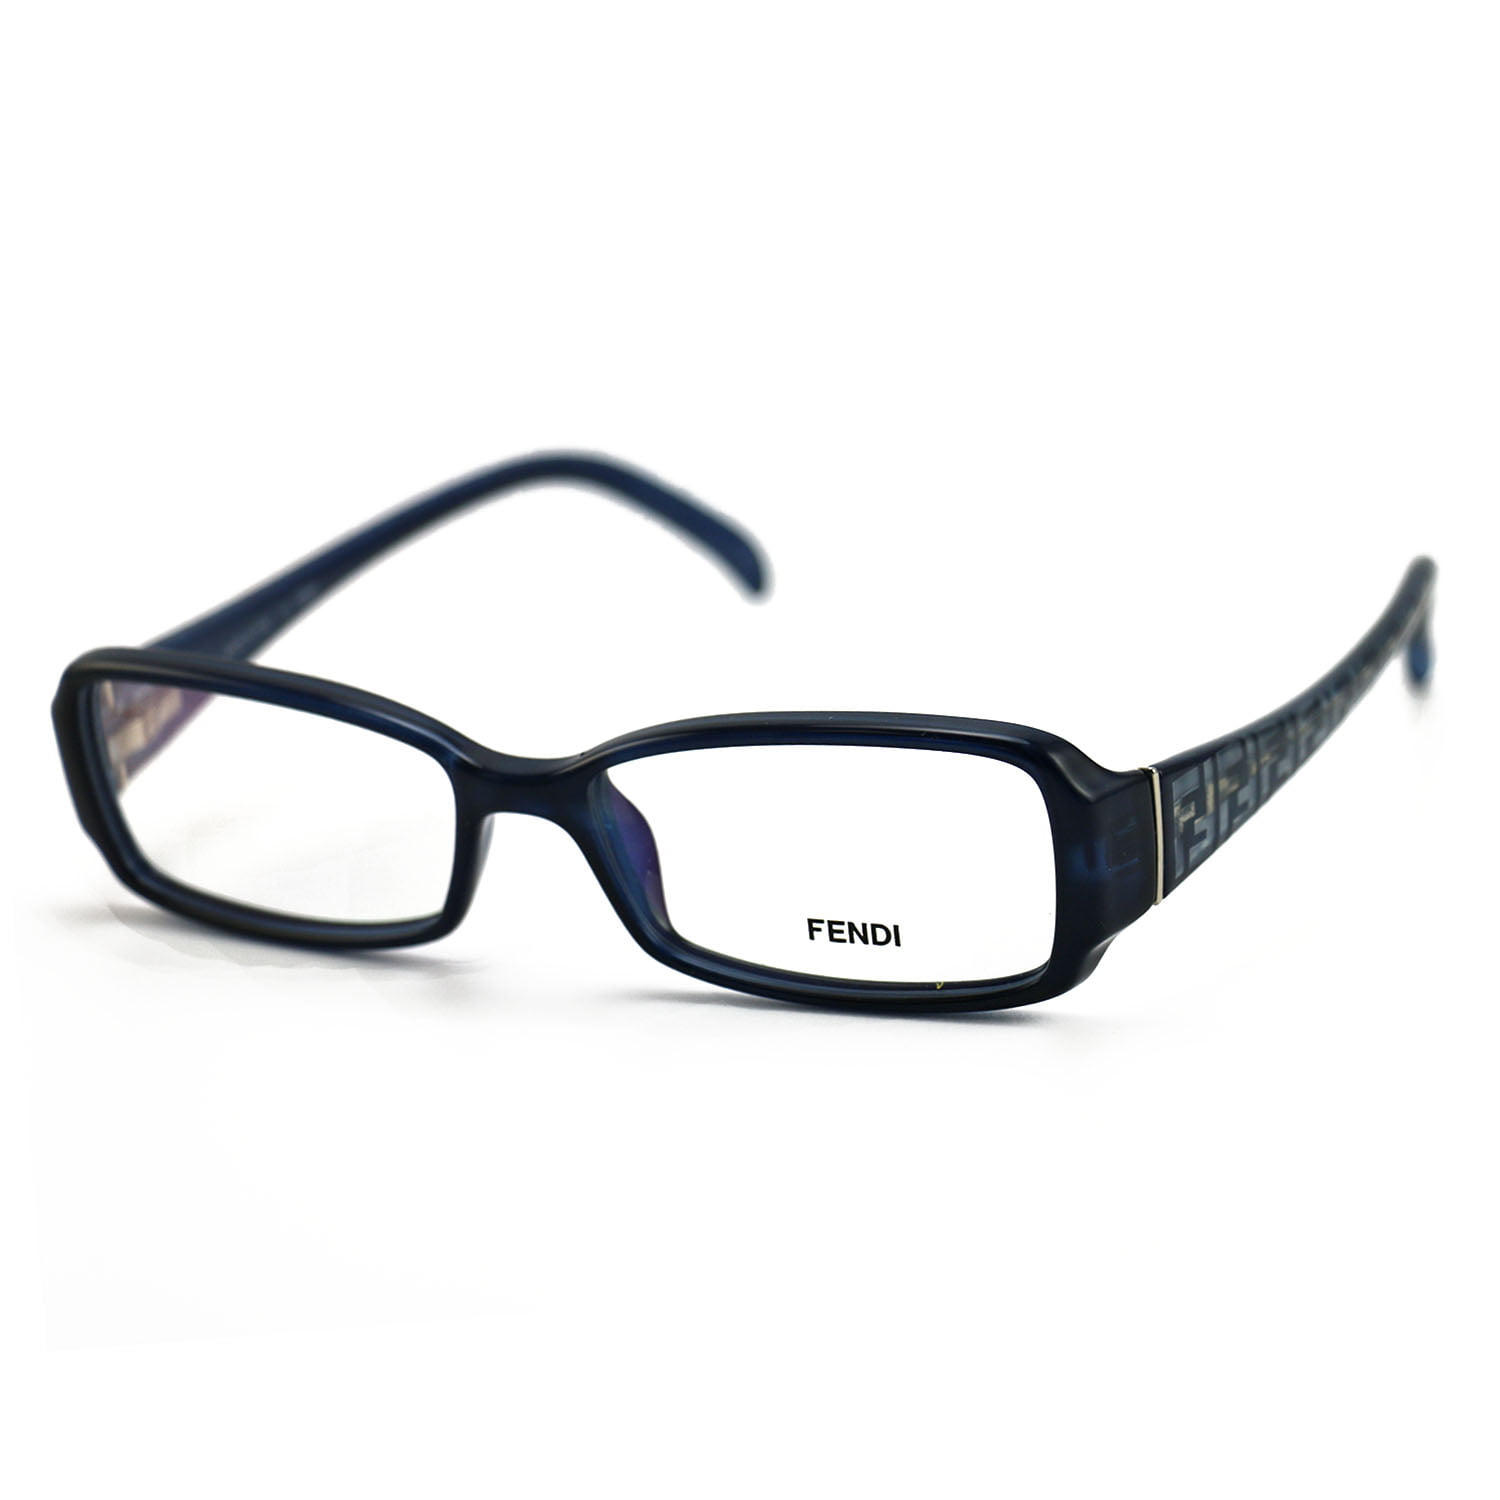 Fendi Women's Eyeglasses FF 936 428 Blue Frame Glasses 52 15 135 ...